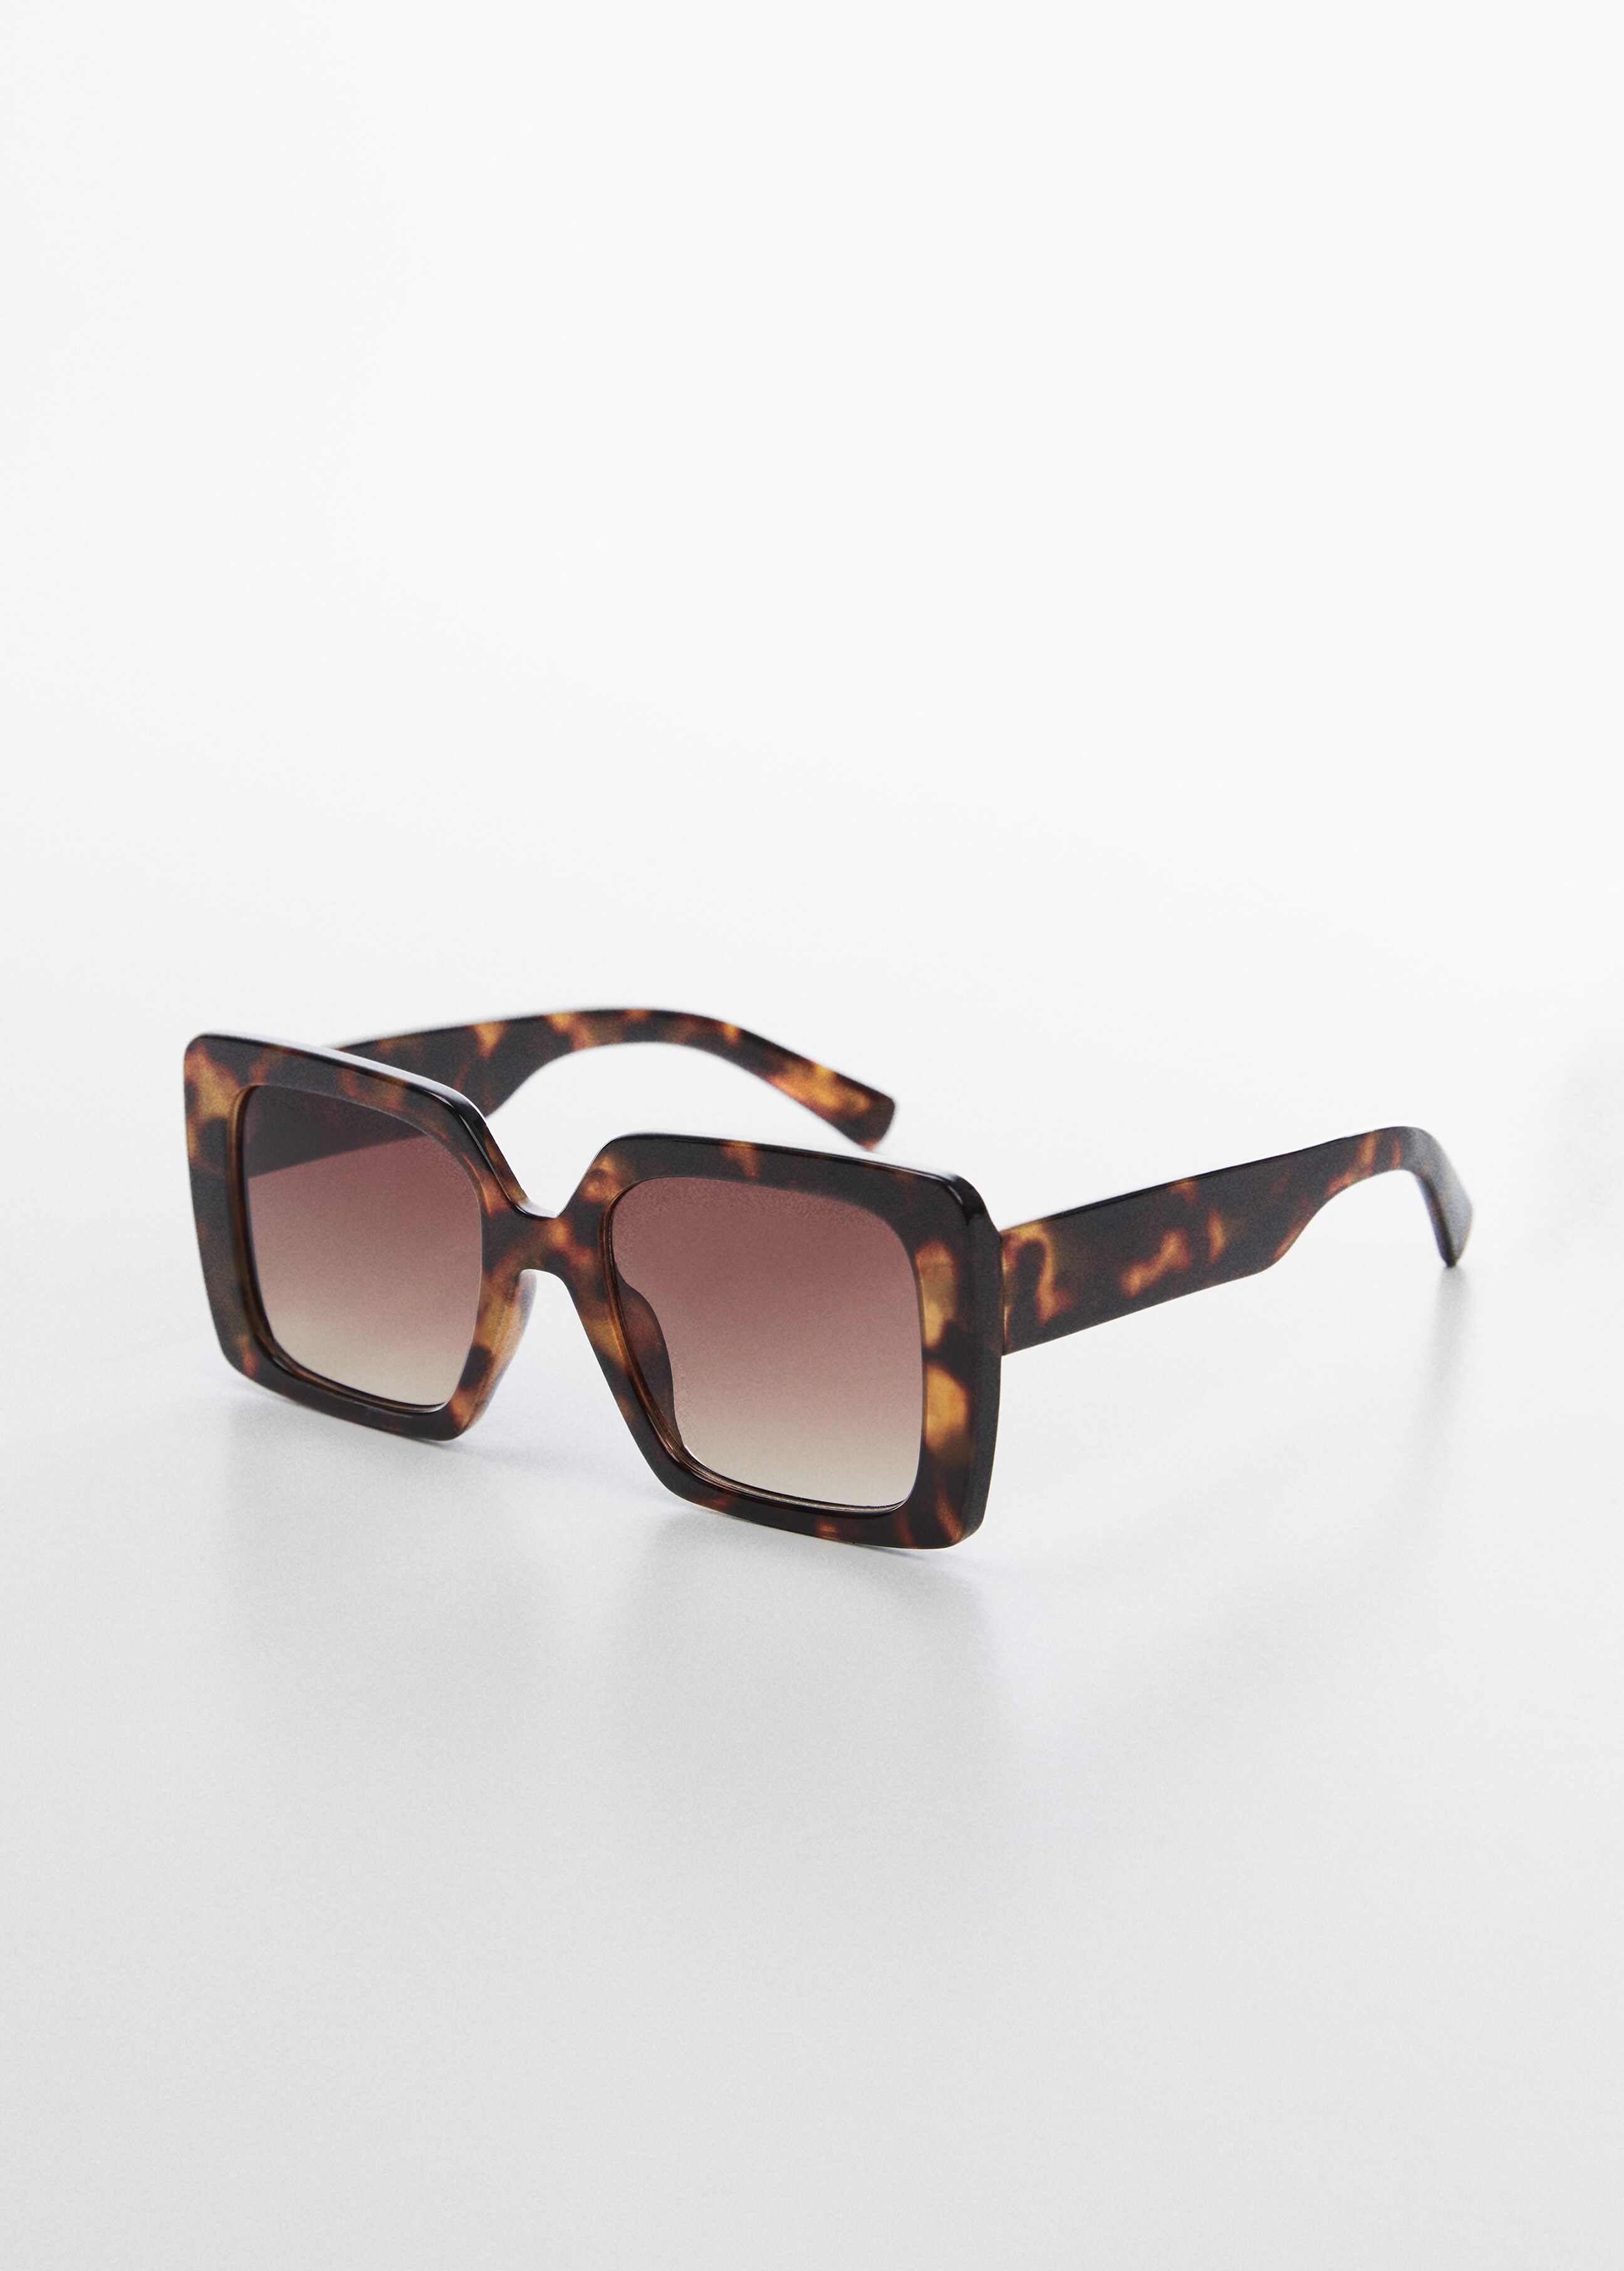 Tortoiseshell square sunglasses - Medium plane